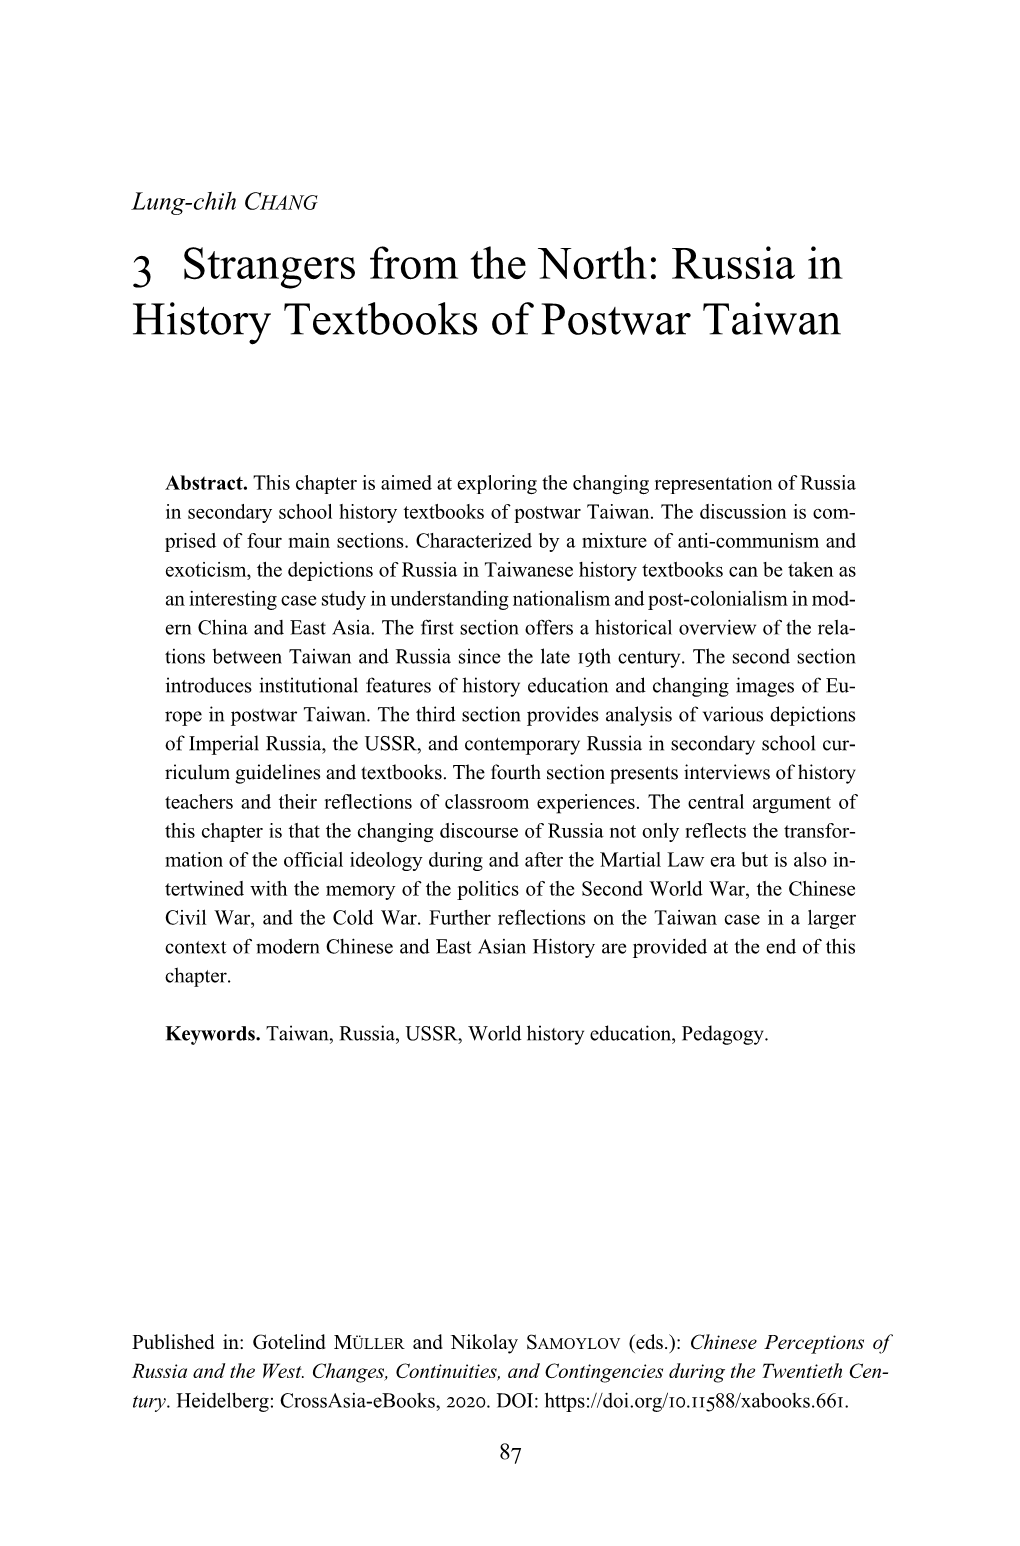 Russia in History Textbooks of Postwar Taiwan